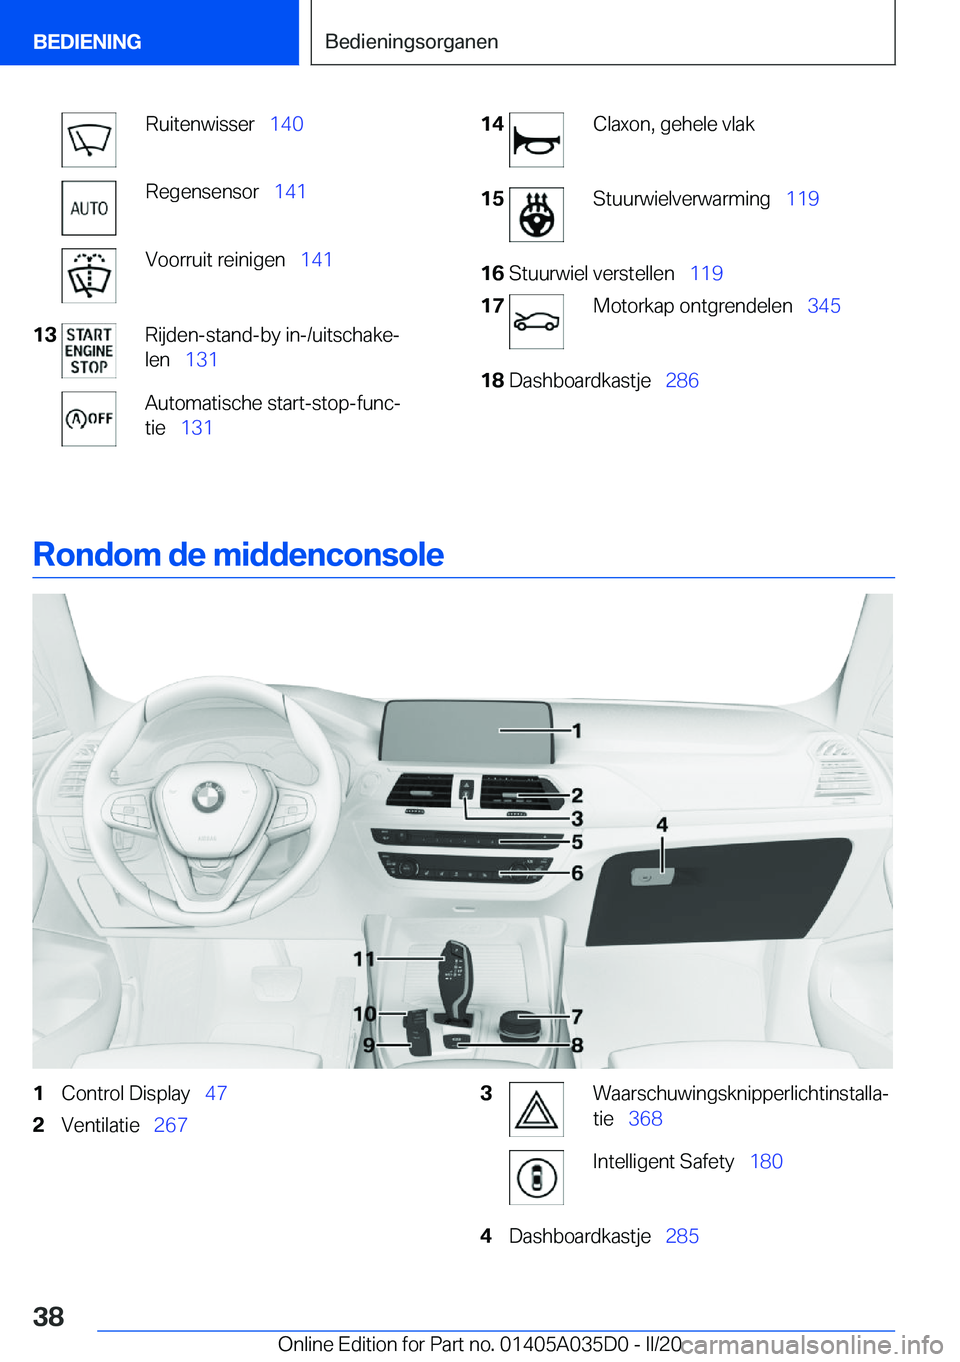 BMW X4 2020  Instructieboekjes (in Dutch) �R�u�i�t�e�n�w�i�s�s�e�r\_�1�4�0�R�e�g�e�n�s�e�n�s�o�r\_ �1�4�1�V�o�o�r�r�u�i�t��r�e�i�n�i�g�e�n\_ �1�4�1�1�3�R�i�j�d�e�n�-�s�t�a�n�d�-�b�y��i�n�-�/�u�i�t�s�c�h�a�k�ej
�l�e�n\_ �1�3�1�A�u�t